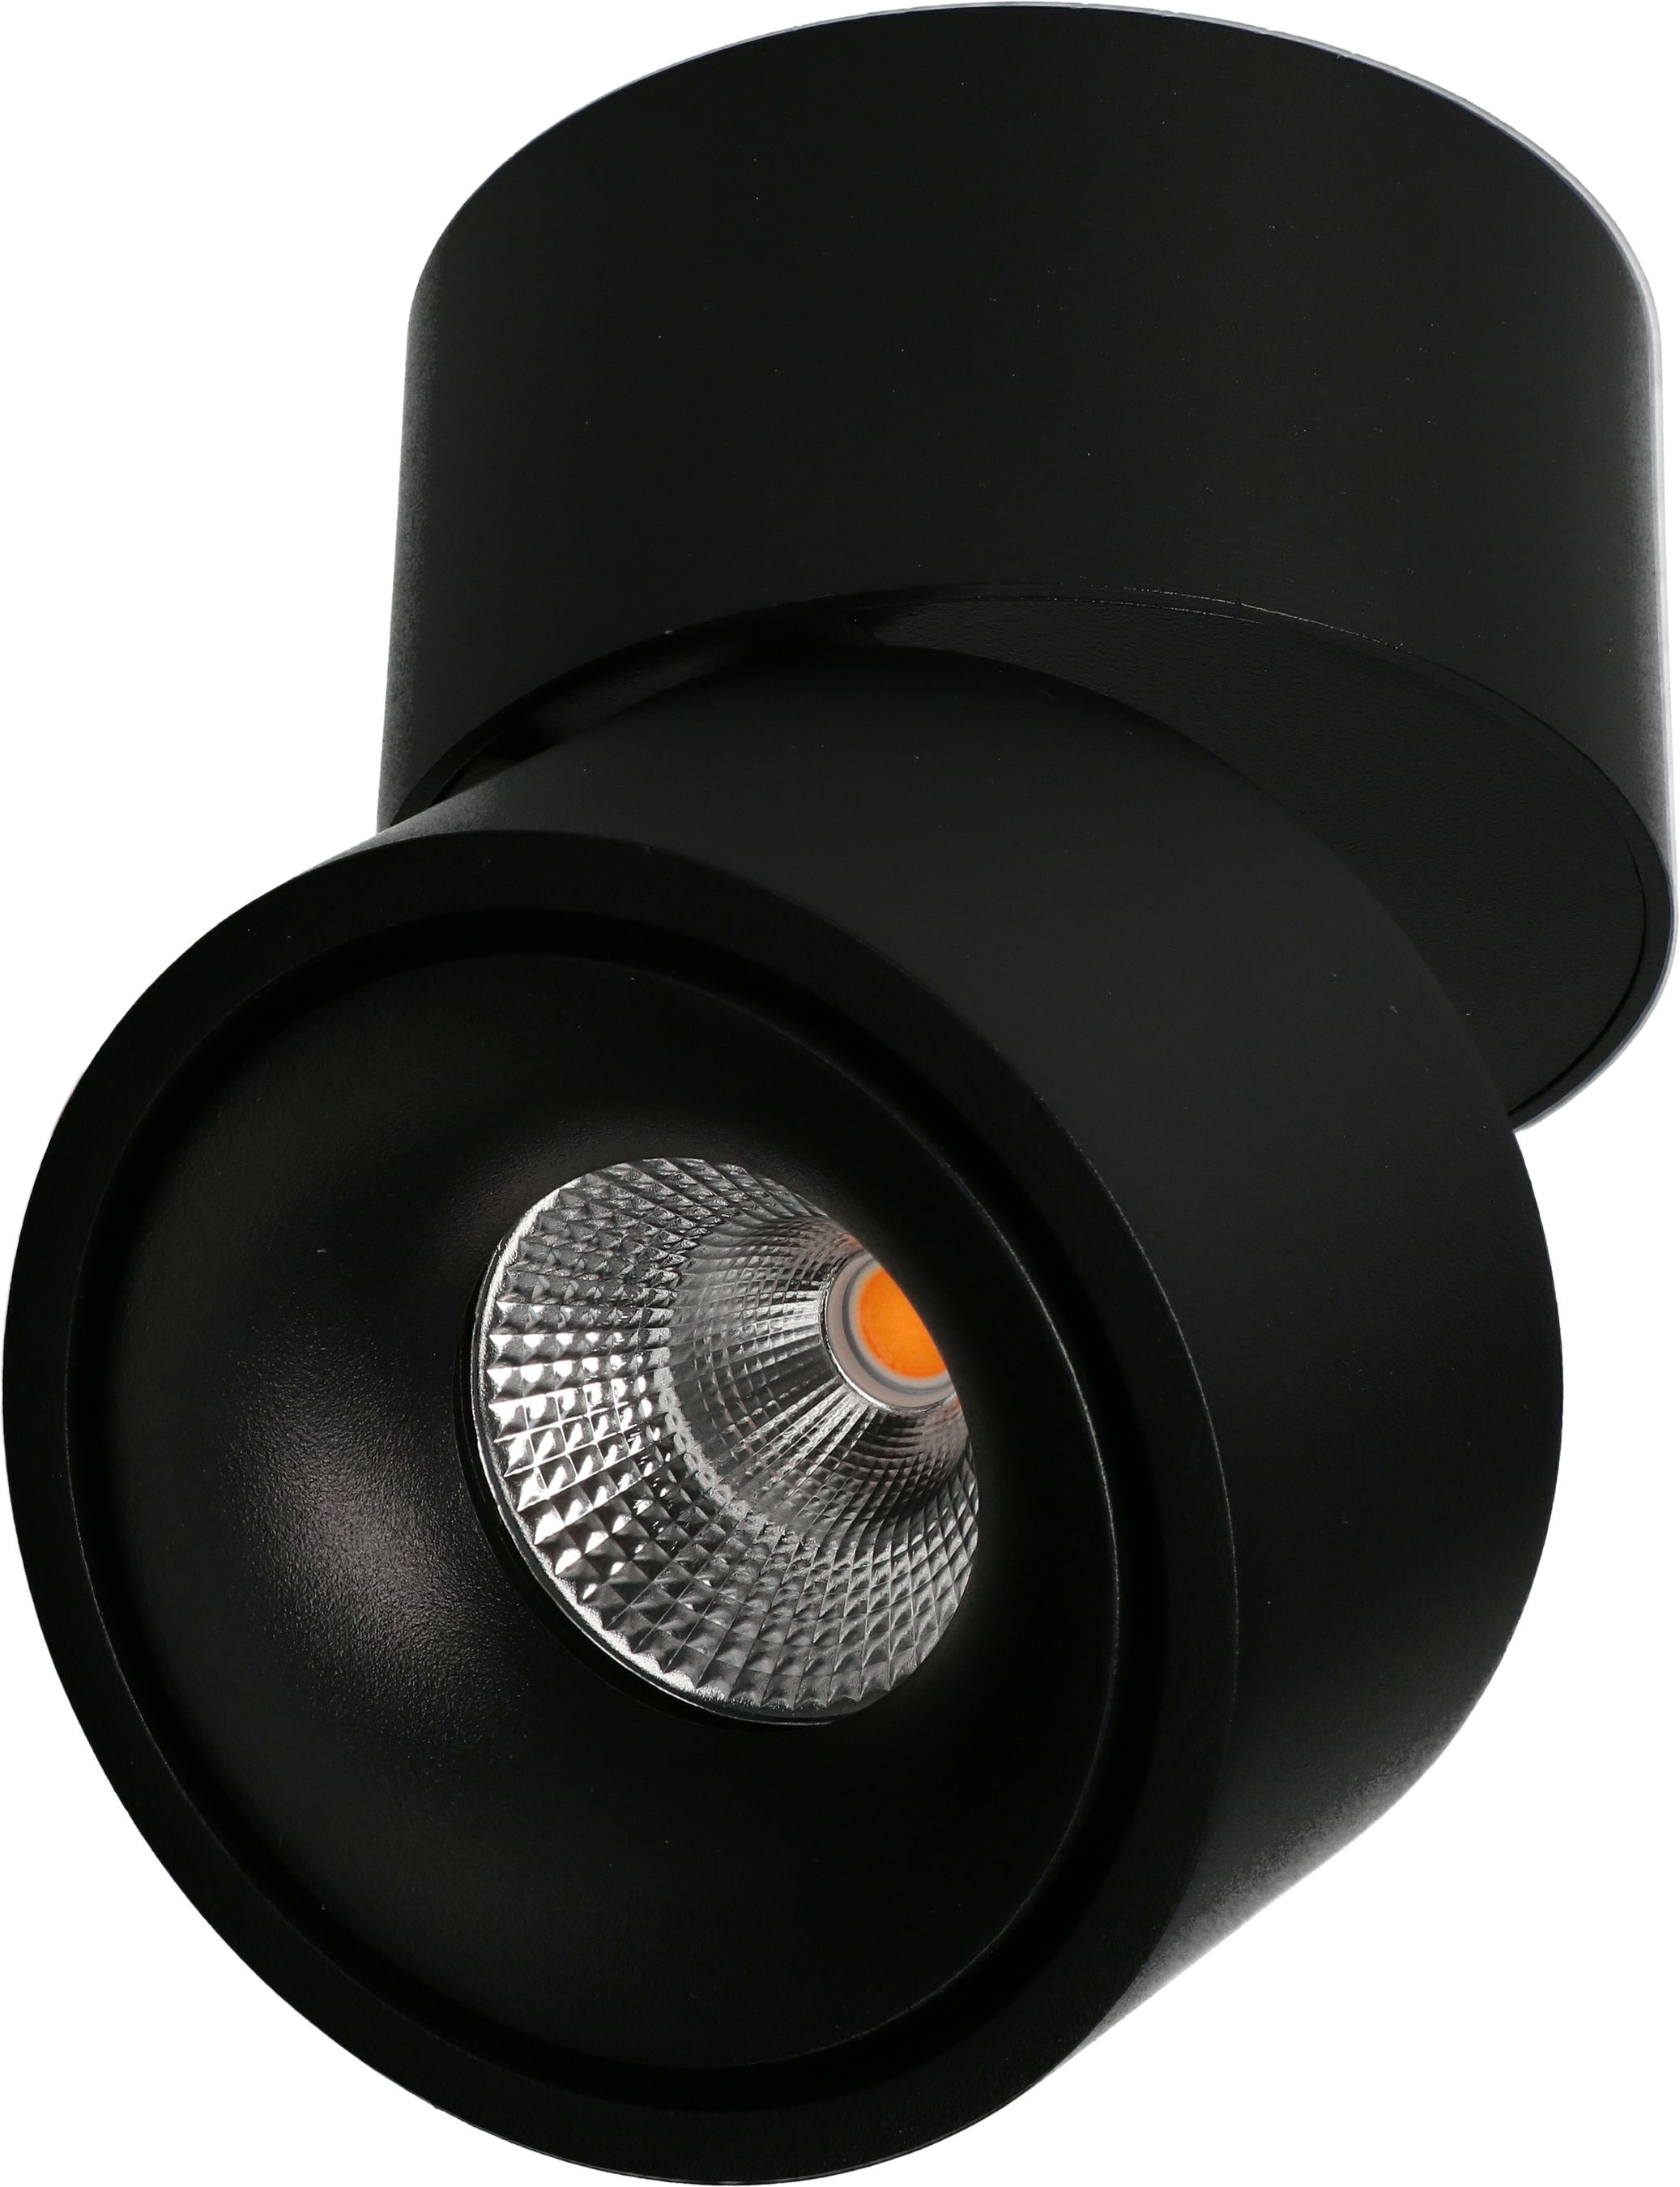 LED plafonnier BIG SHINE mat noir 3000K 1100lm 36°